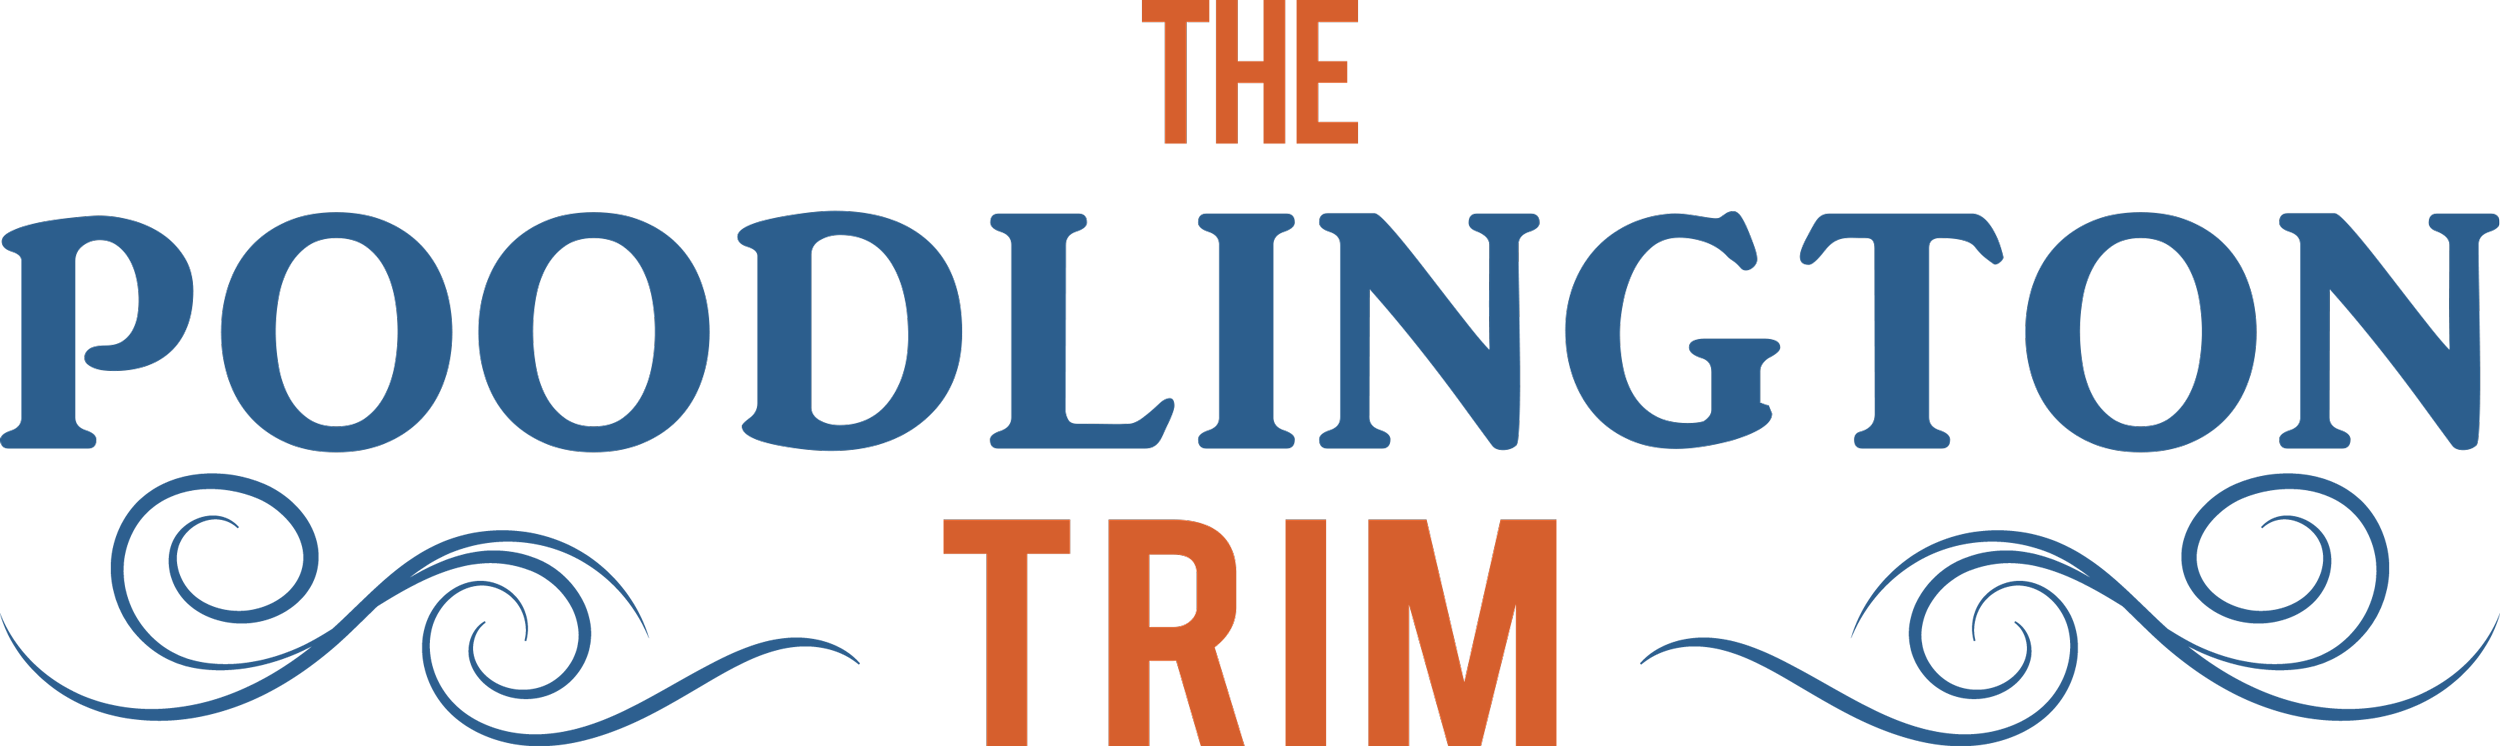 The Poodlington Trim title image